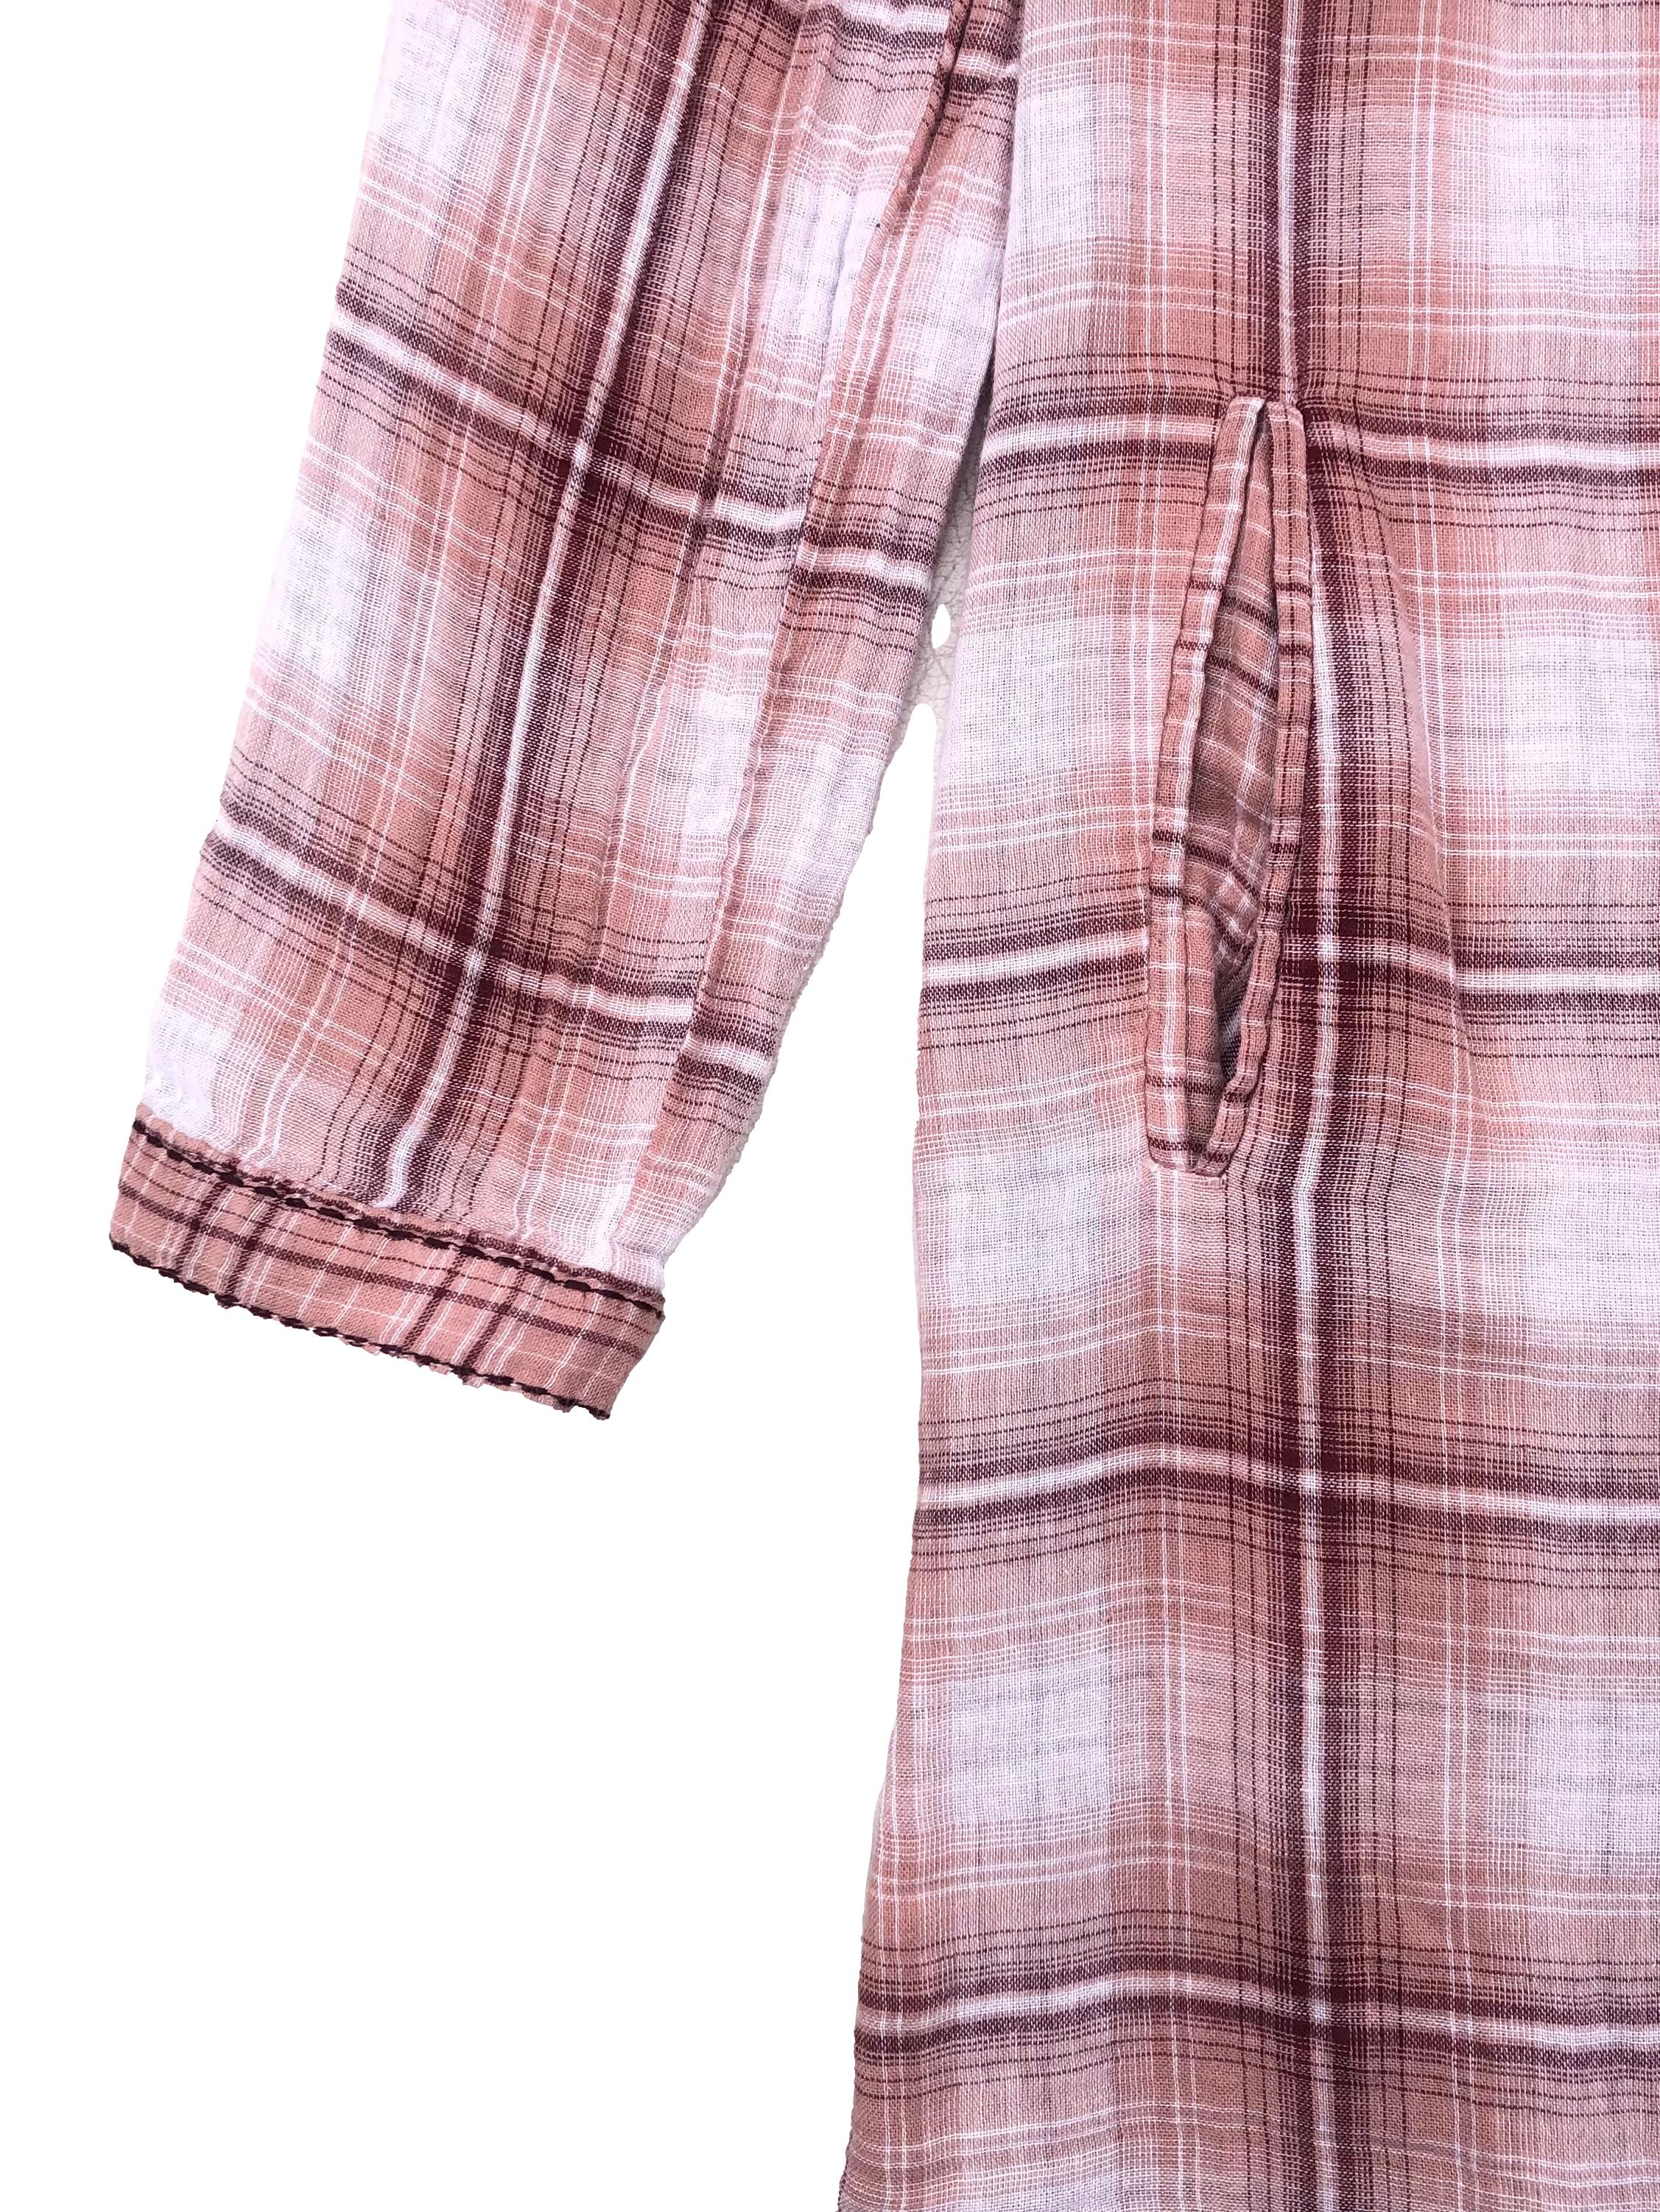 Vestido camisero Navigata 100% algodón a cuadros rosa y blancos, tiene botones y bolsillos delanteros. Busto 100cm Largo 85cm